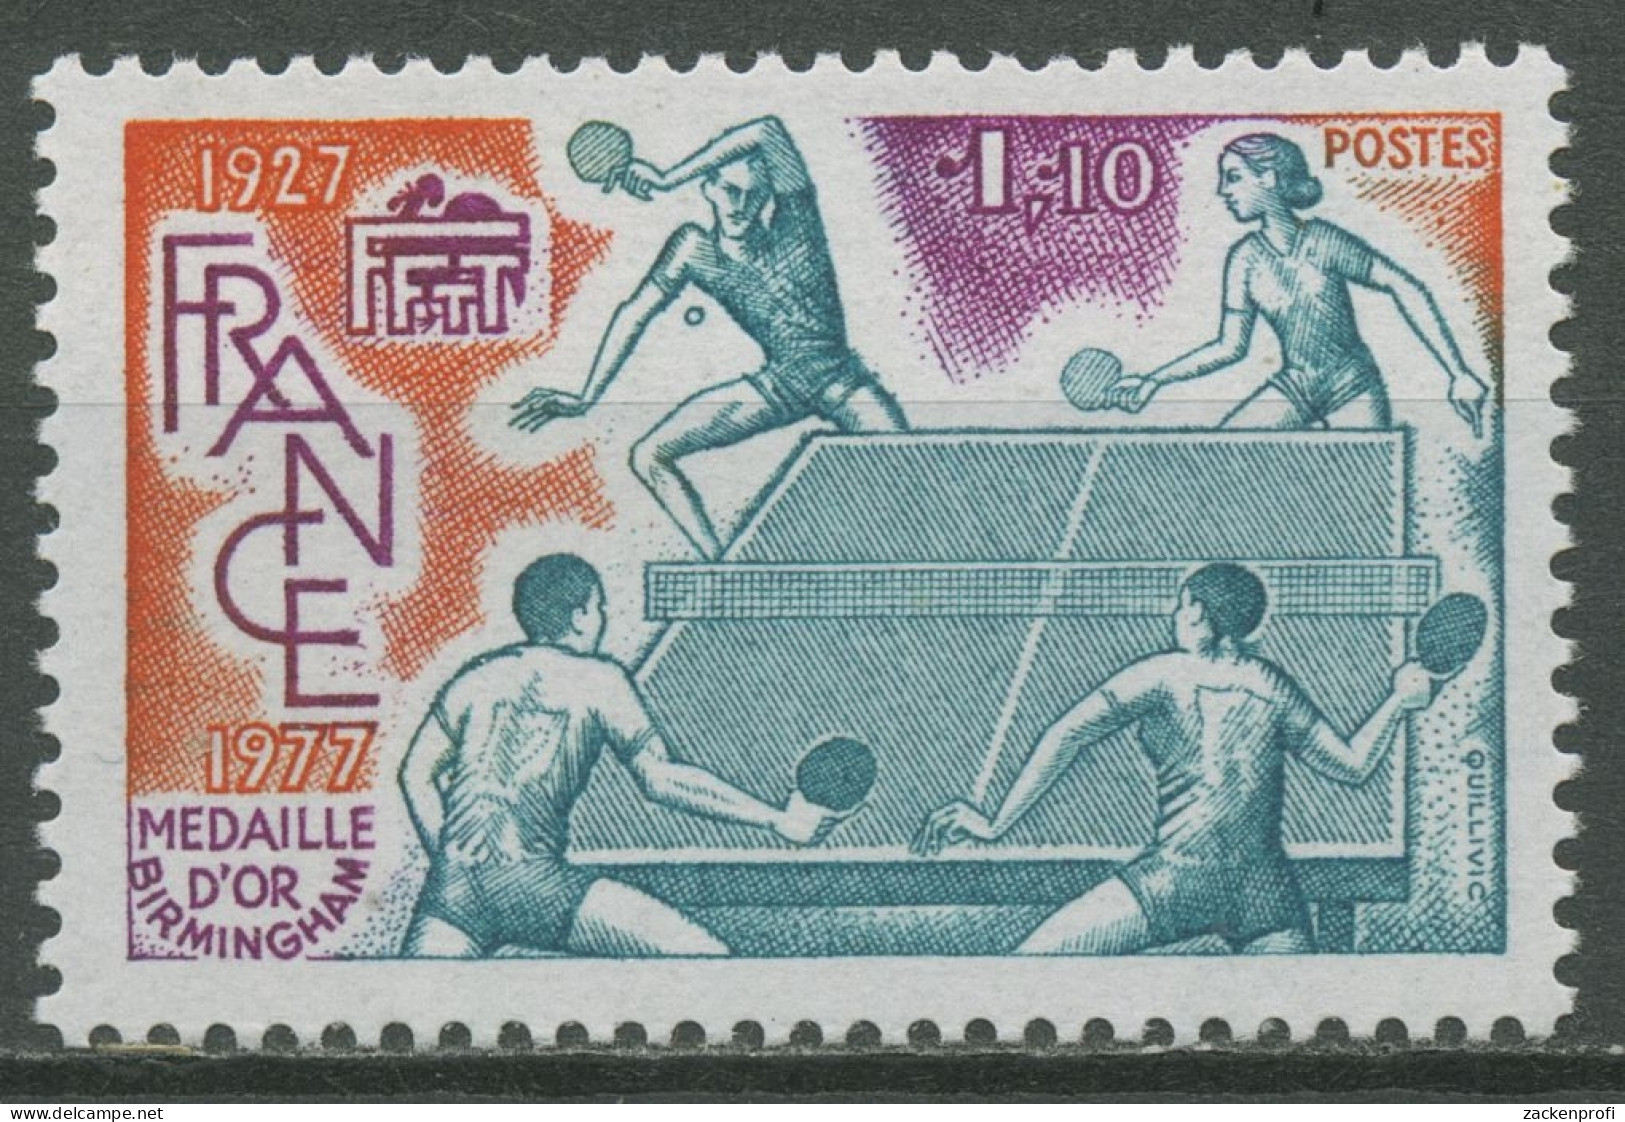 Frankreich 1977 Tischtennis 2060 Postfrisch - Ungebraucht